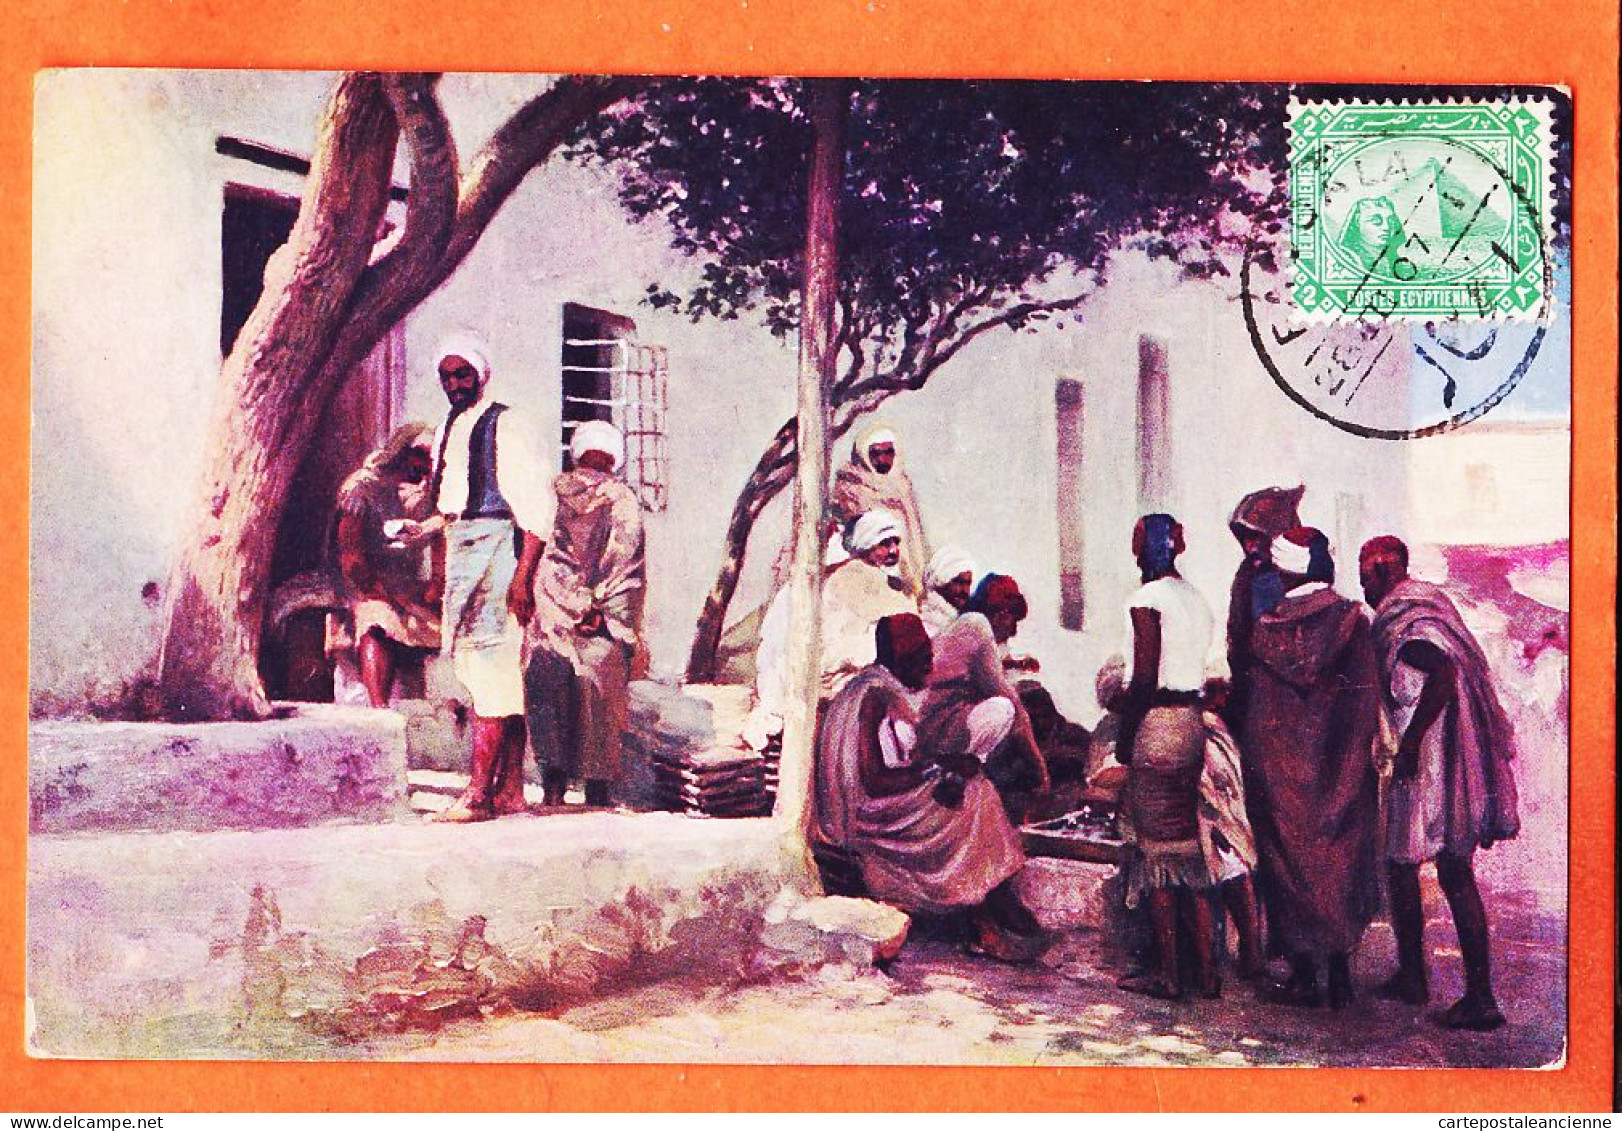 09958 / ⭐ Ethnic Scène Type Egypte ◉ Café Arabe 1907 à PENTECOUTEAU Paris ◉ Il. WUTTKE ? ◉ Litho R-102 - Personen